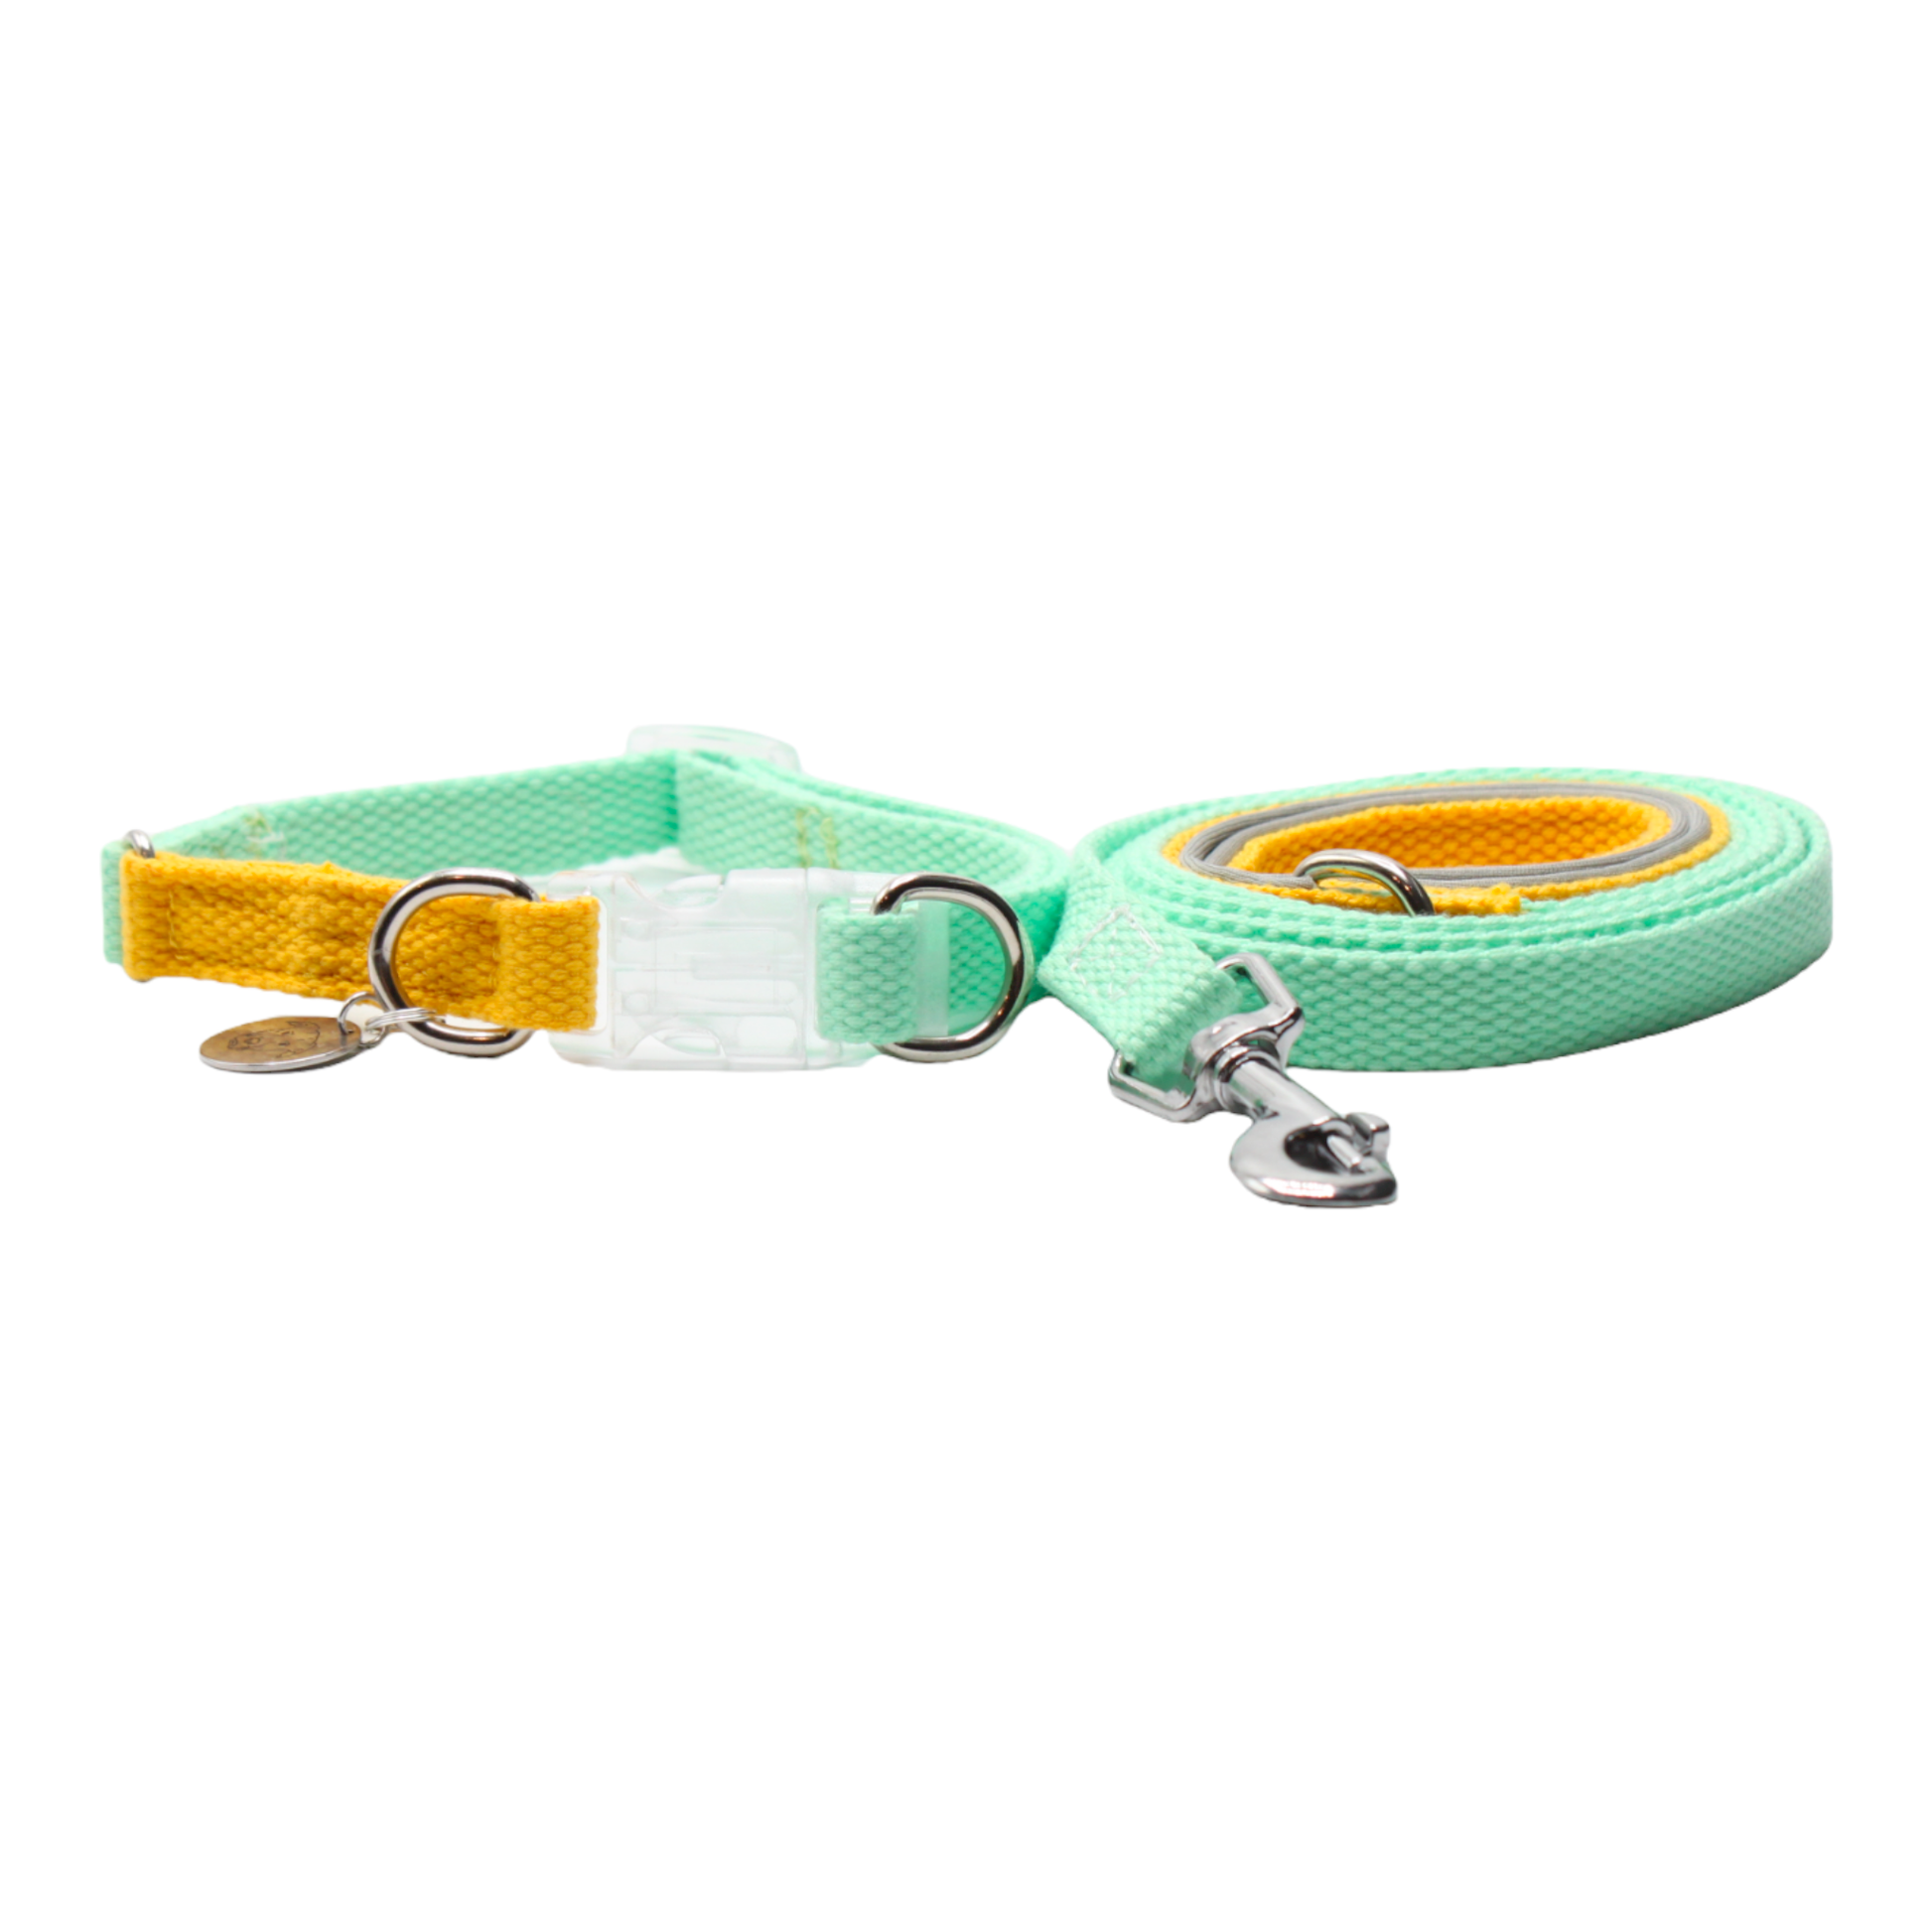 collier laisse chien boucle plastique transparente bicolore jaune vert double anneaux twiggy